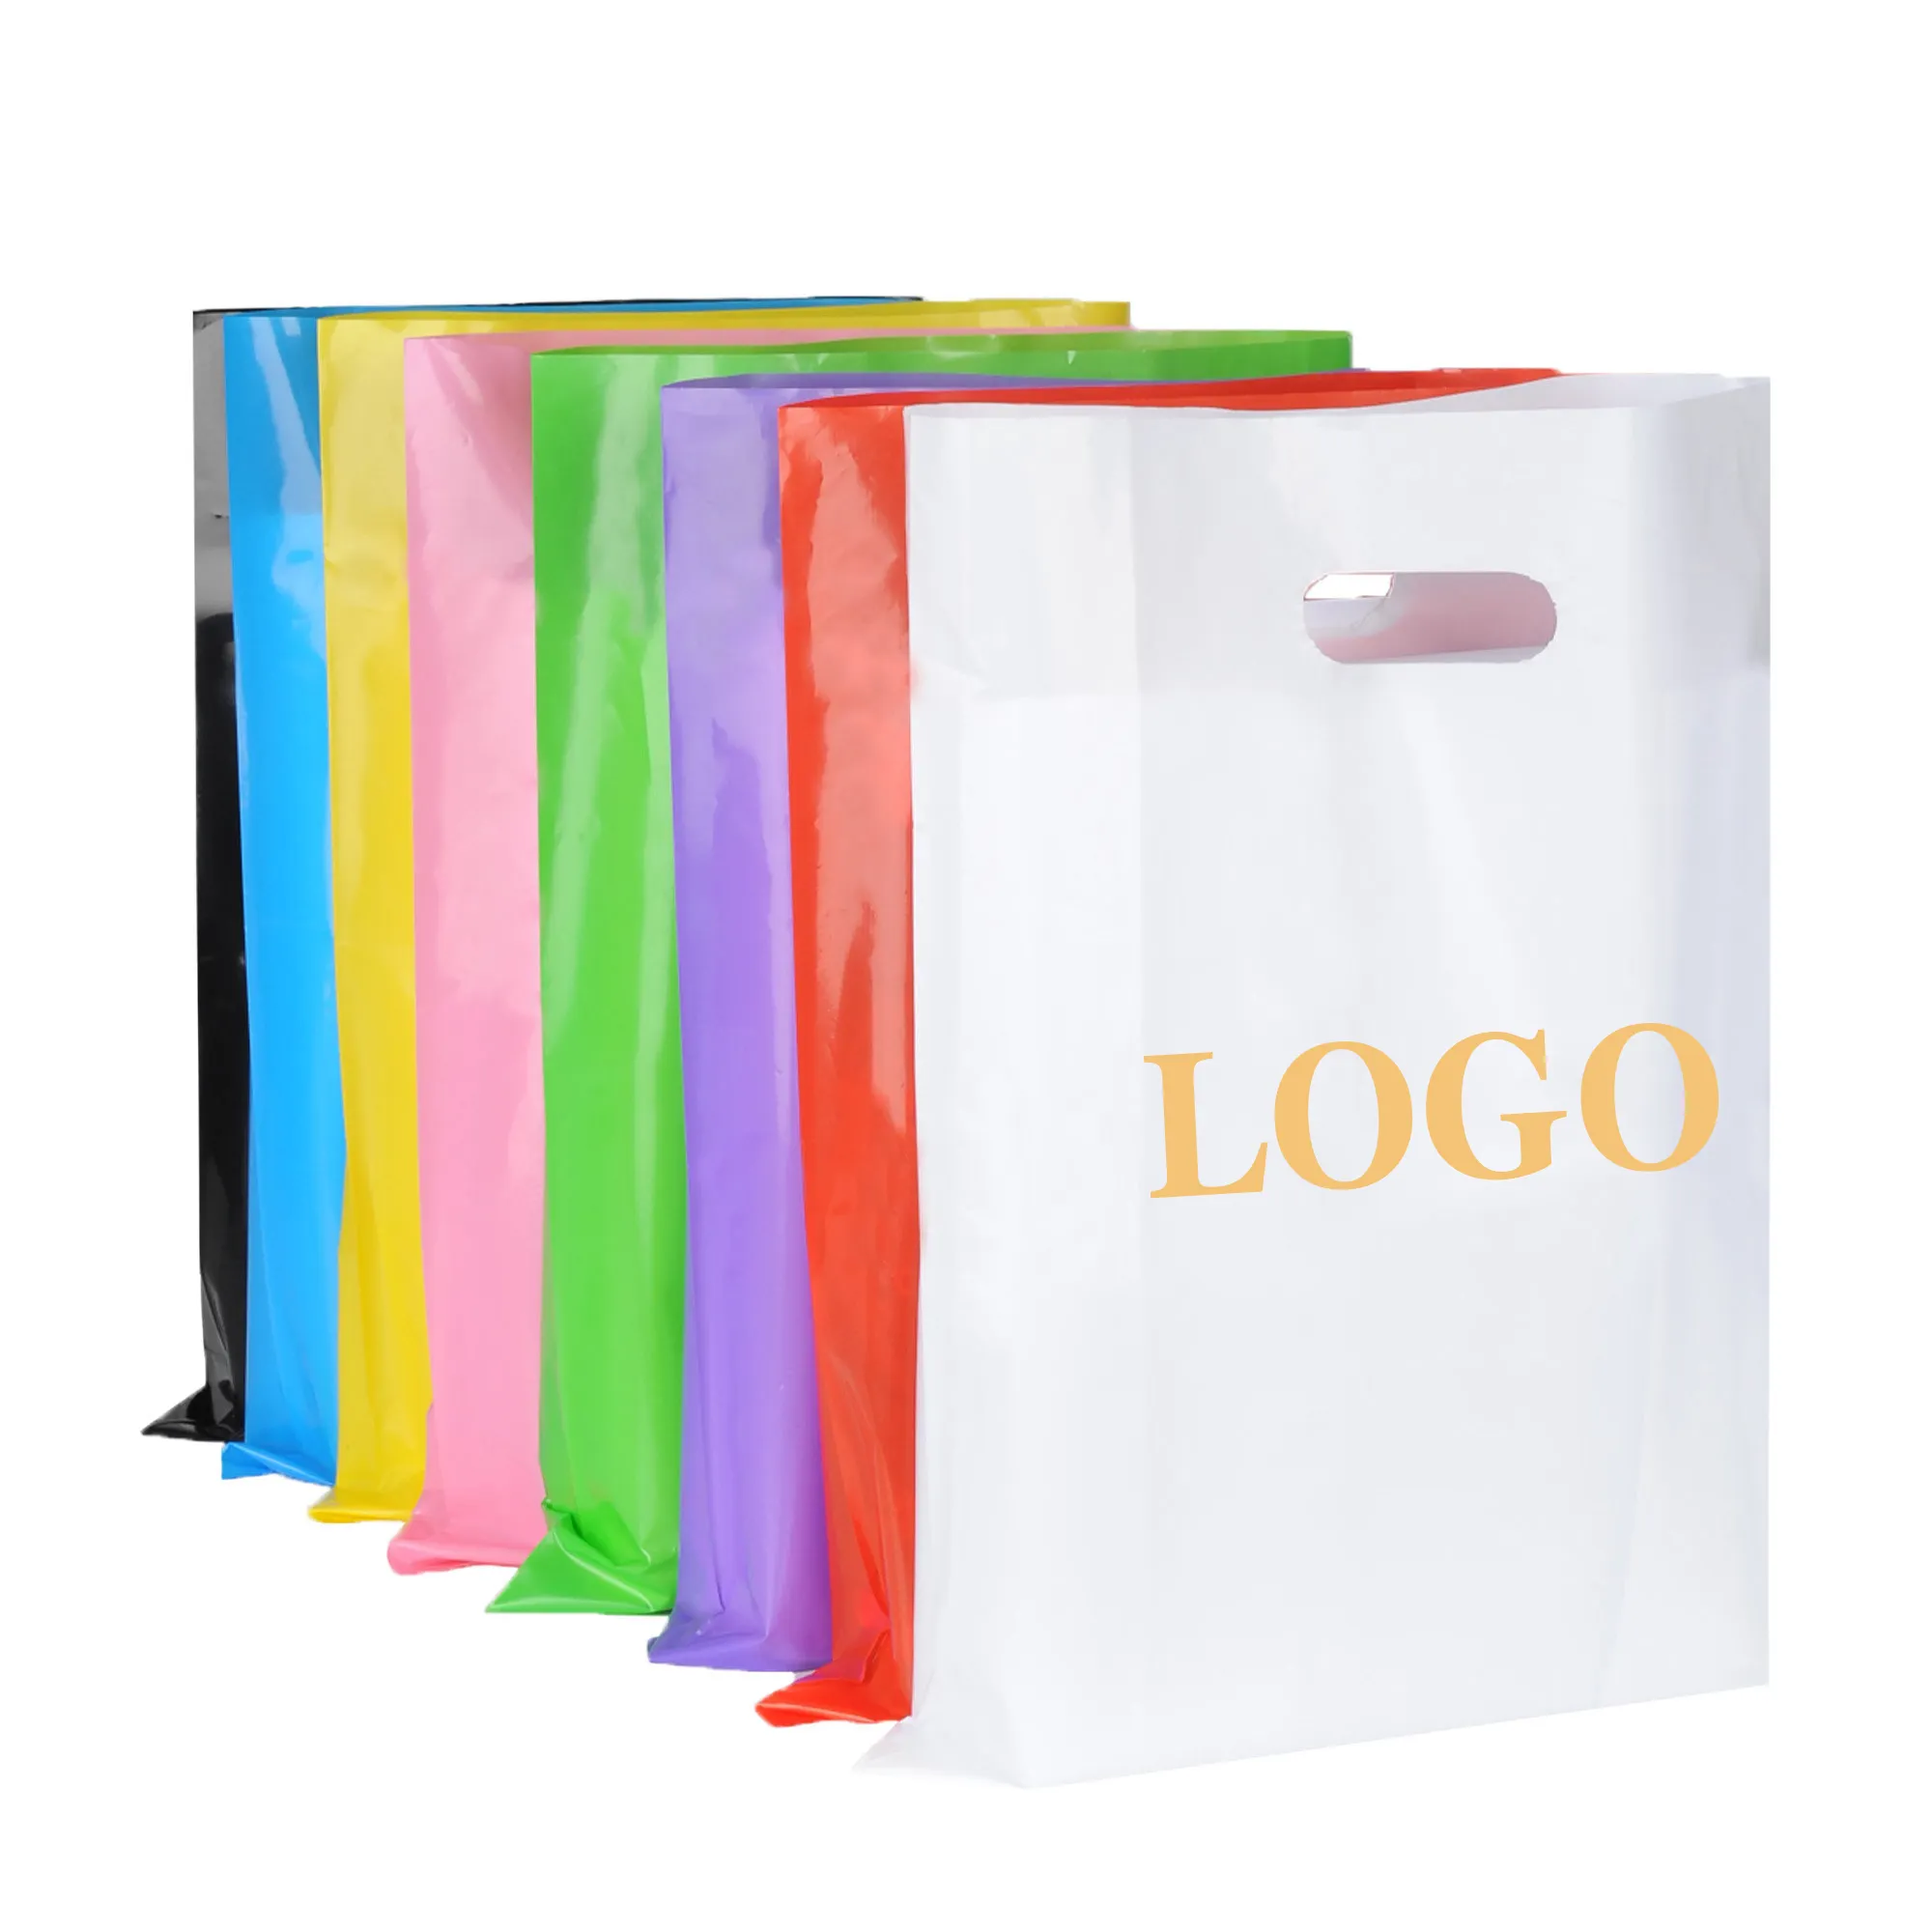 도매 공장 가격 다이 컷 친환경 맞춤형 디자인 쇼핑 그라비어 인쇄 로고와 플라스틱 포장 가방